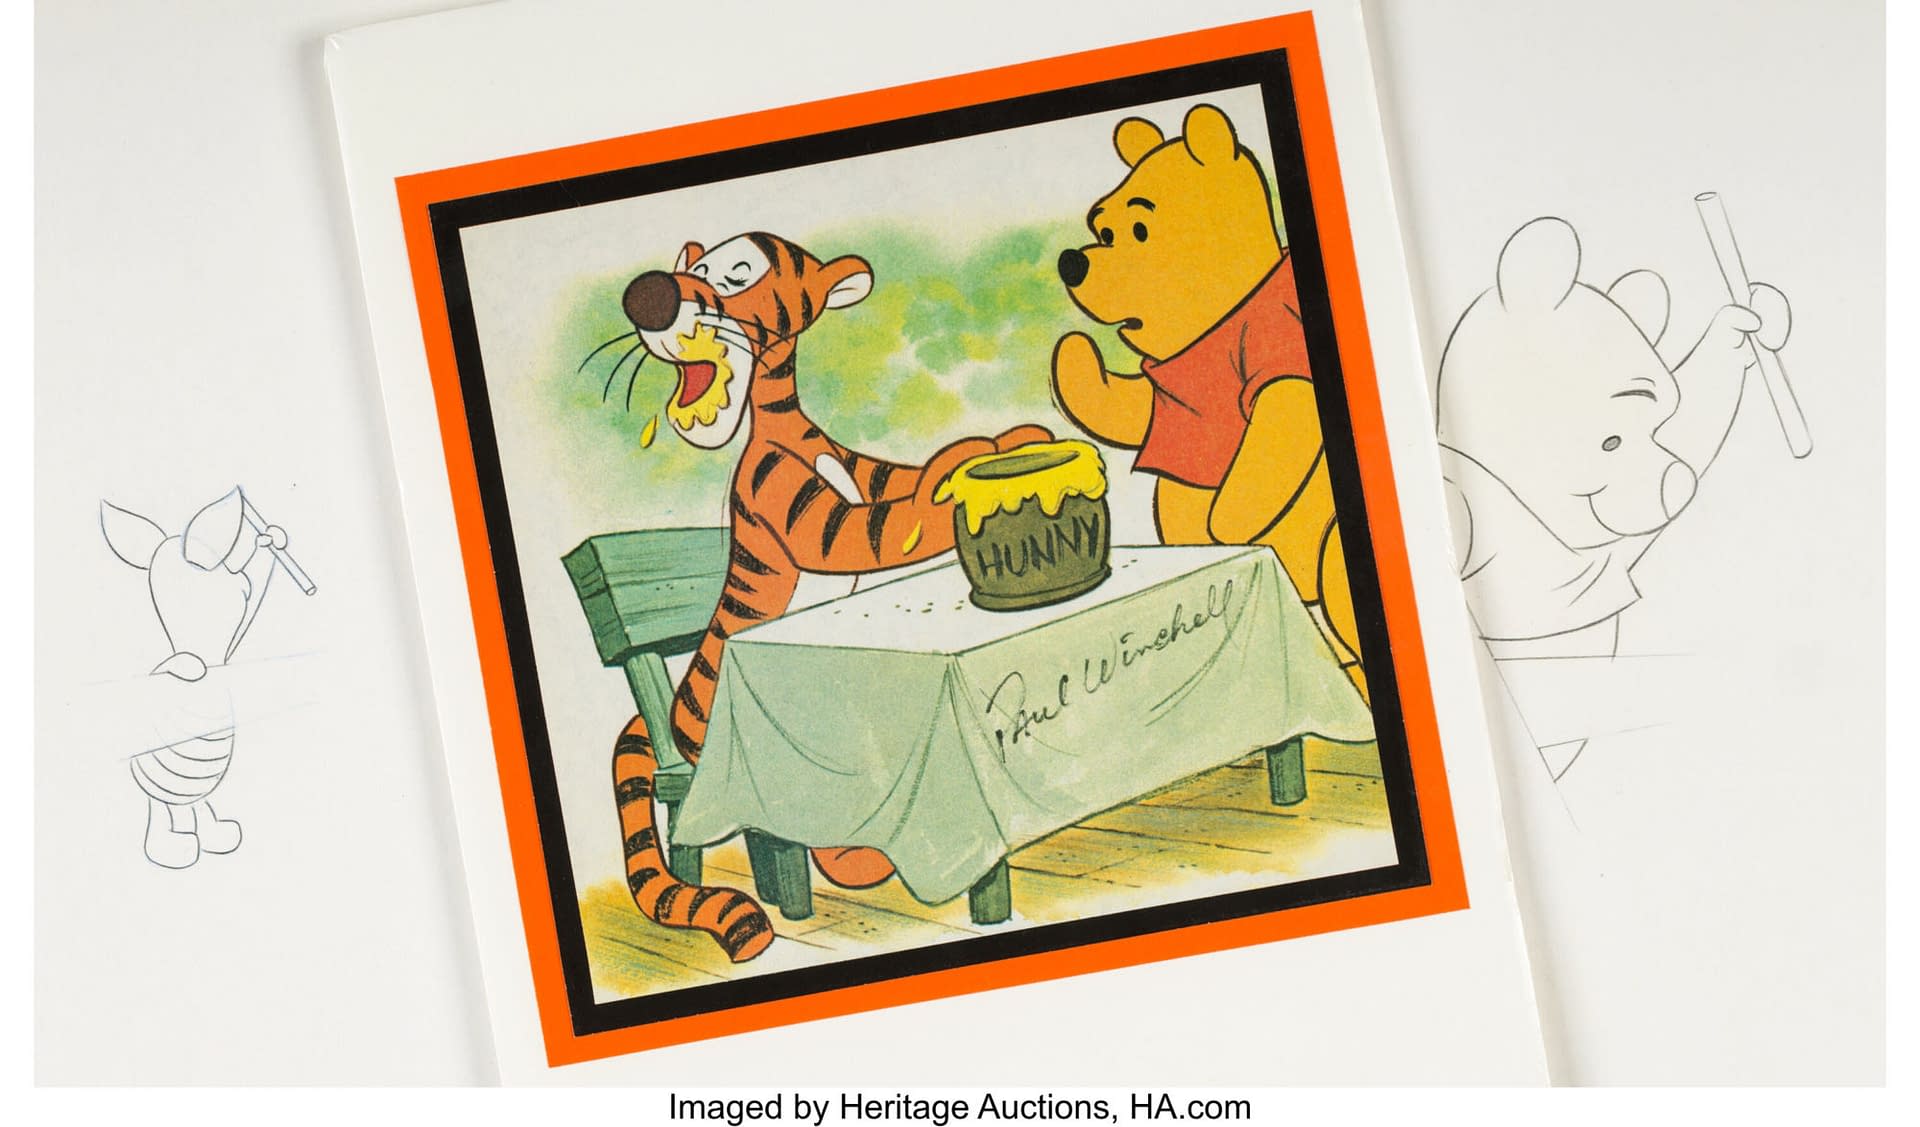 tigger and pooh drawing